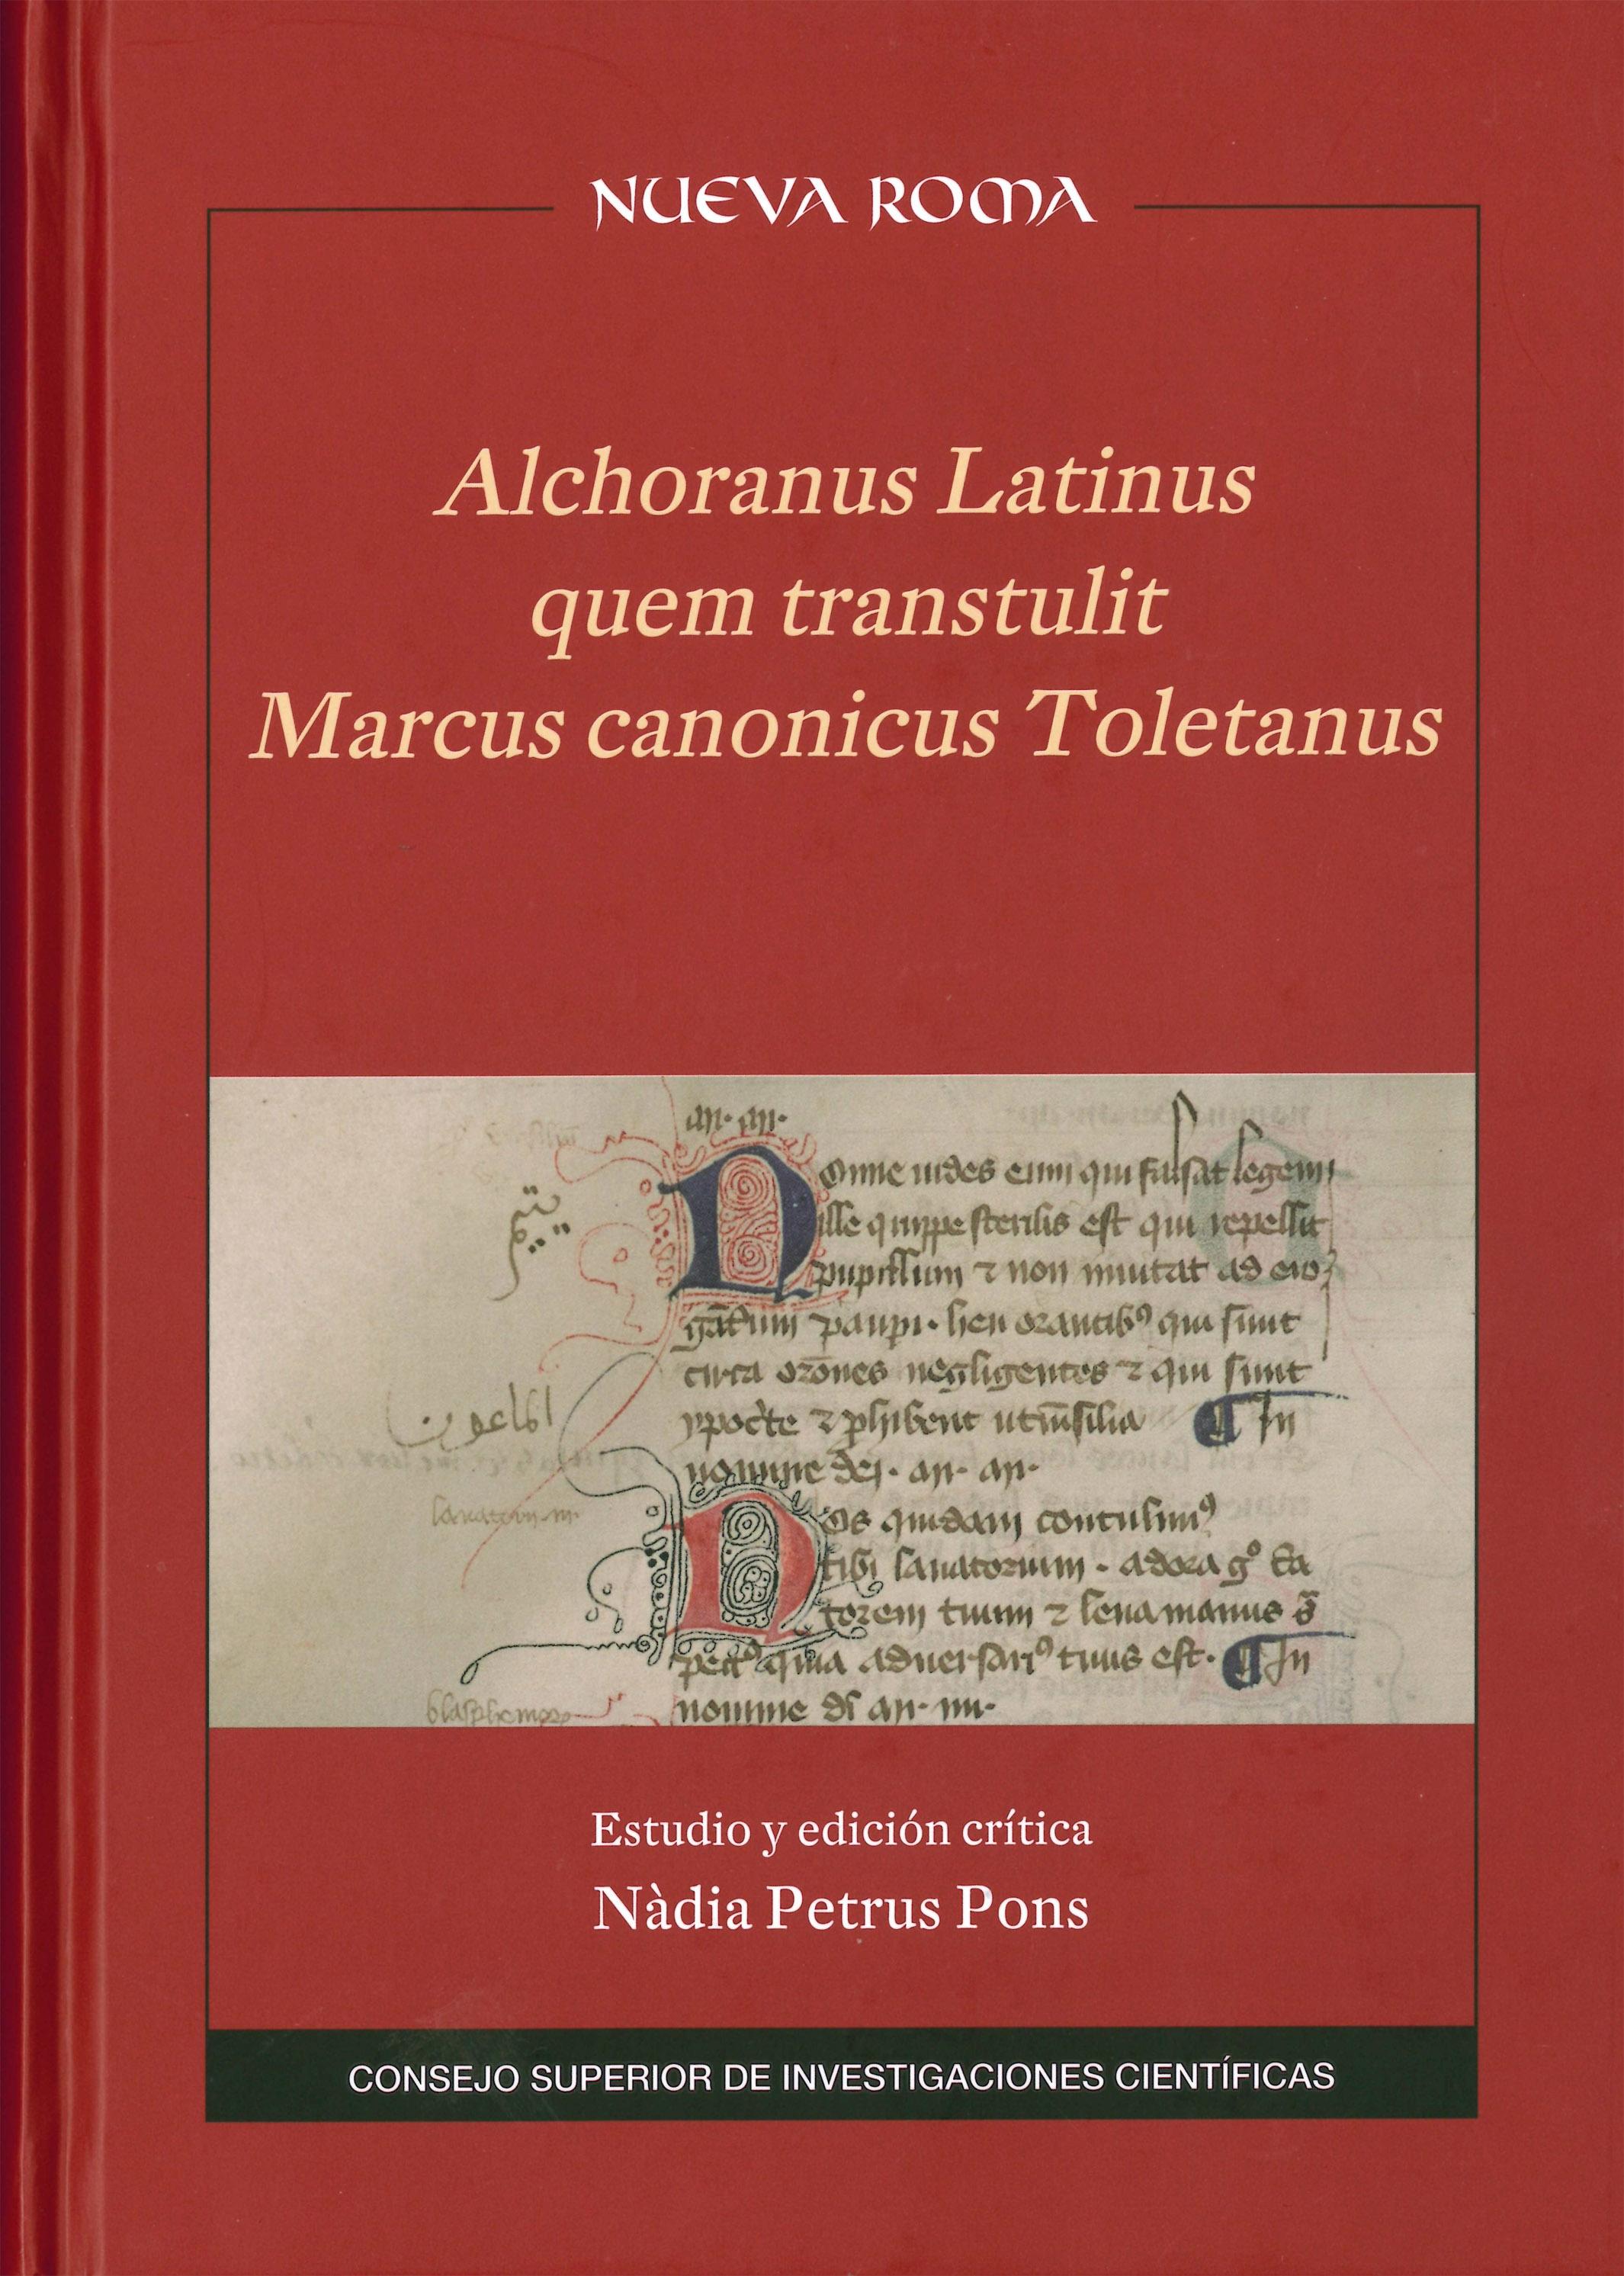 Alchoranus latinus quem transtulit Marcus canonicus Toletanus "Estudio y edición crítica"